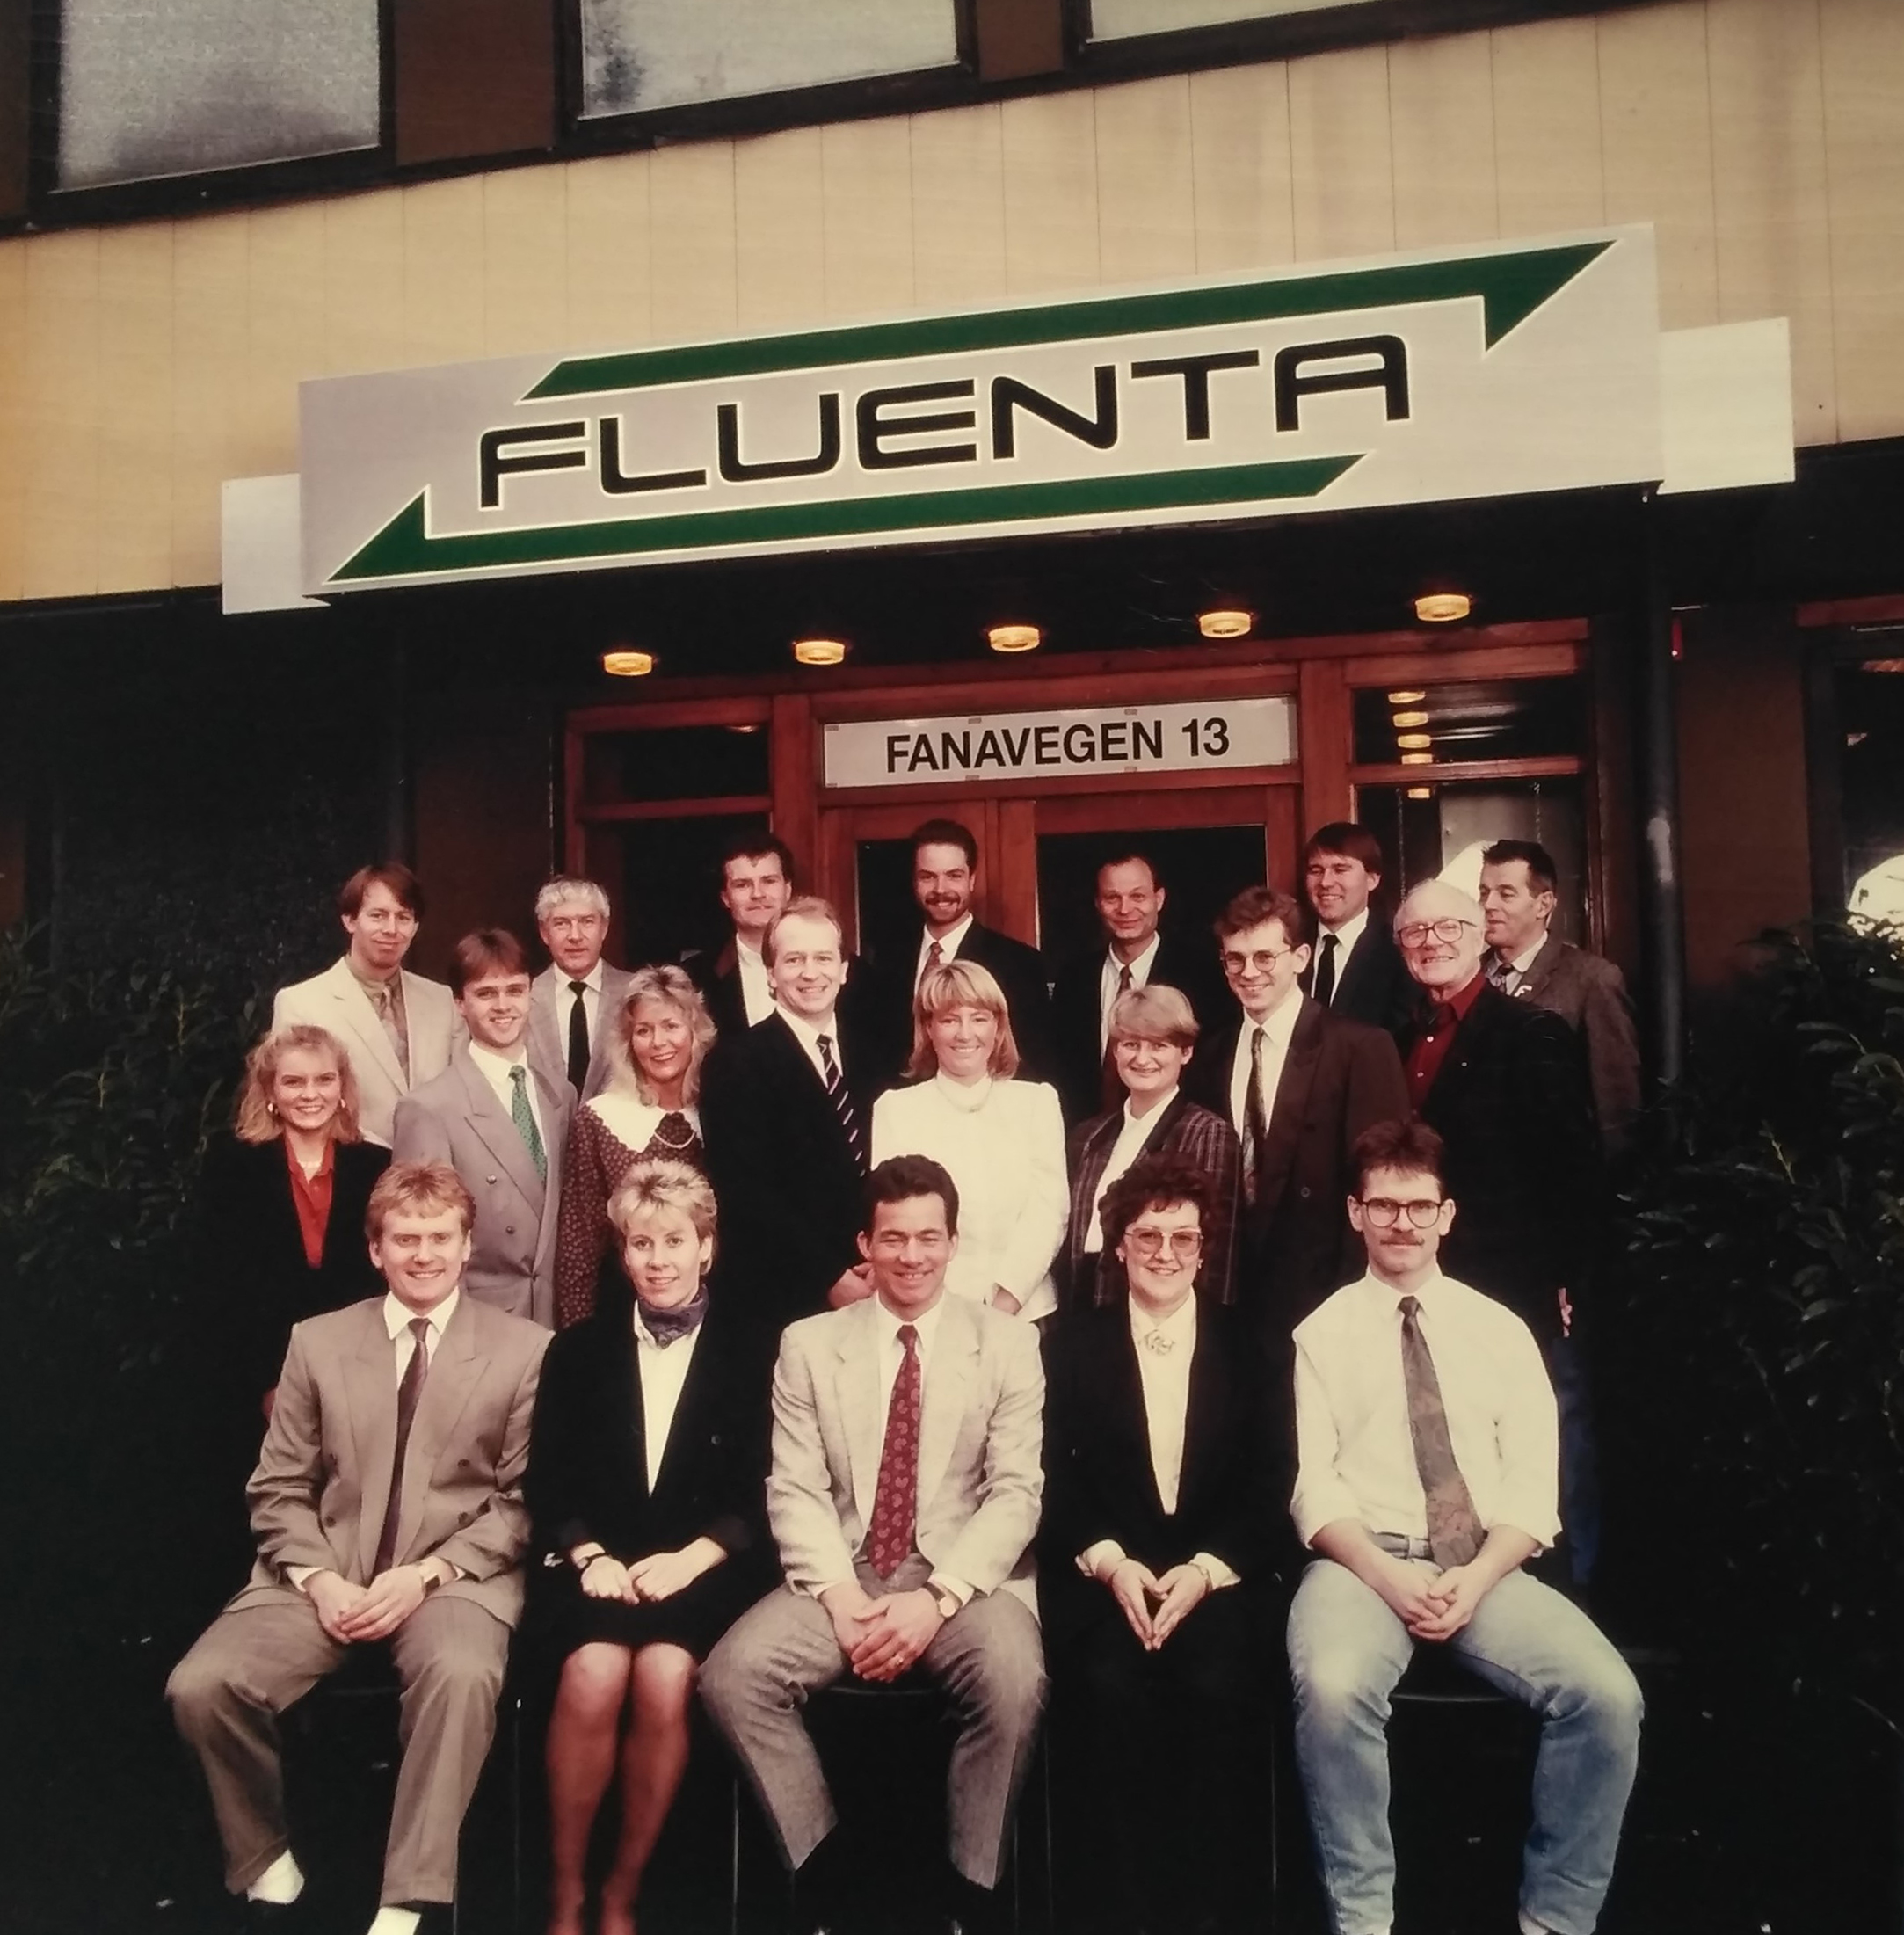 History of Fluenta company